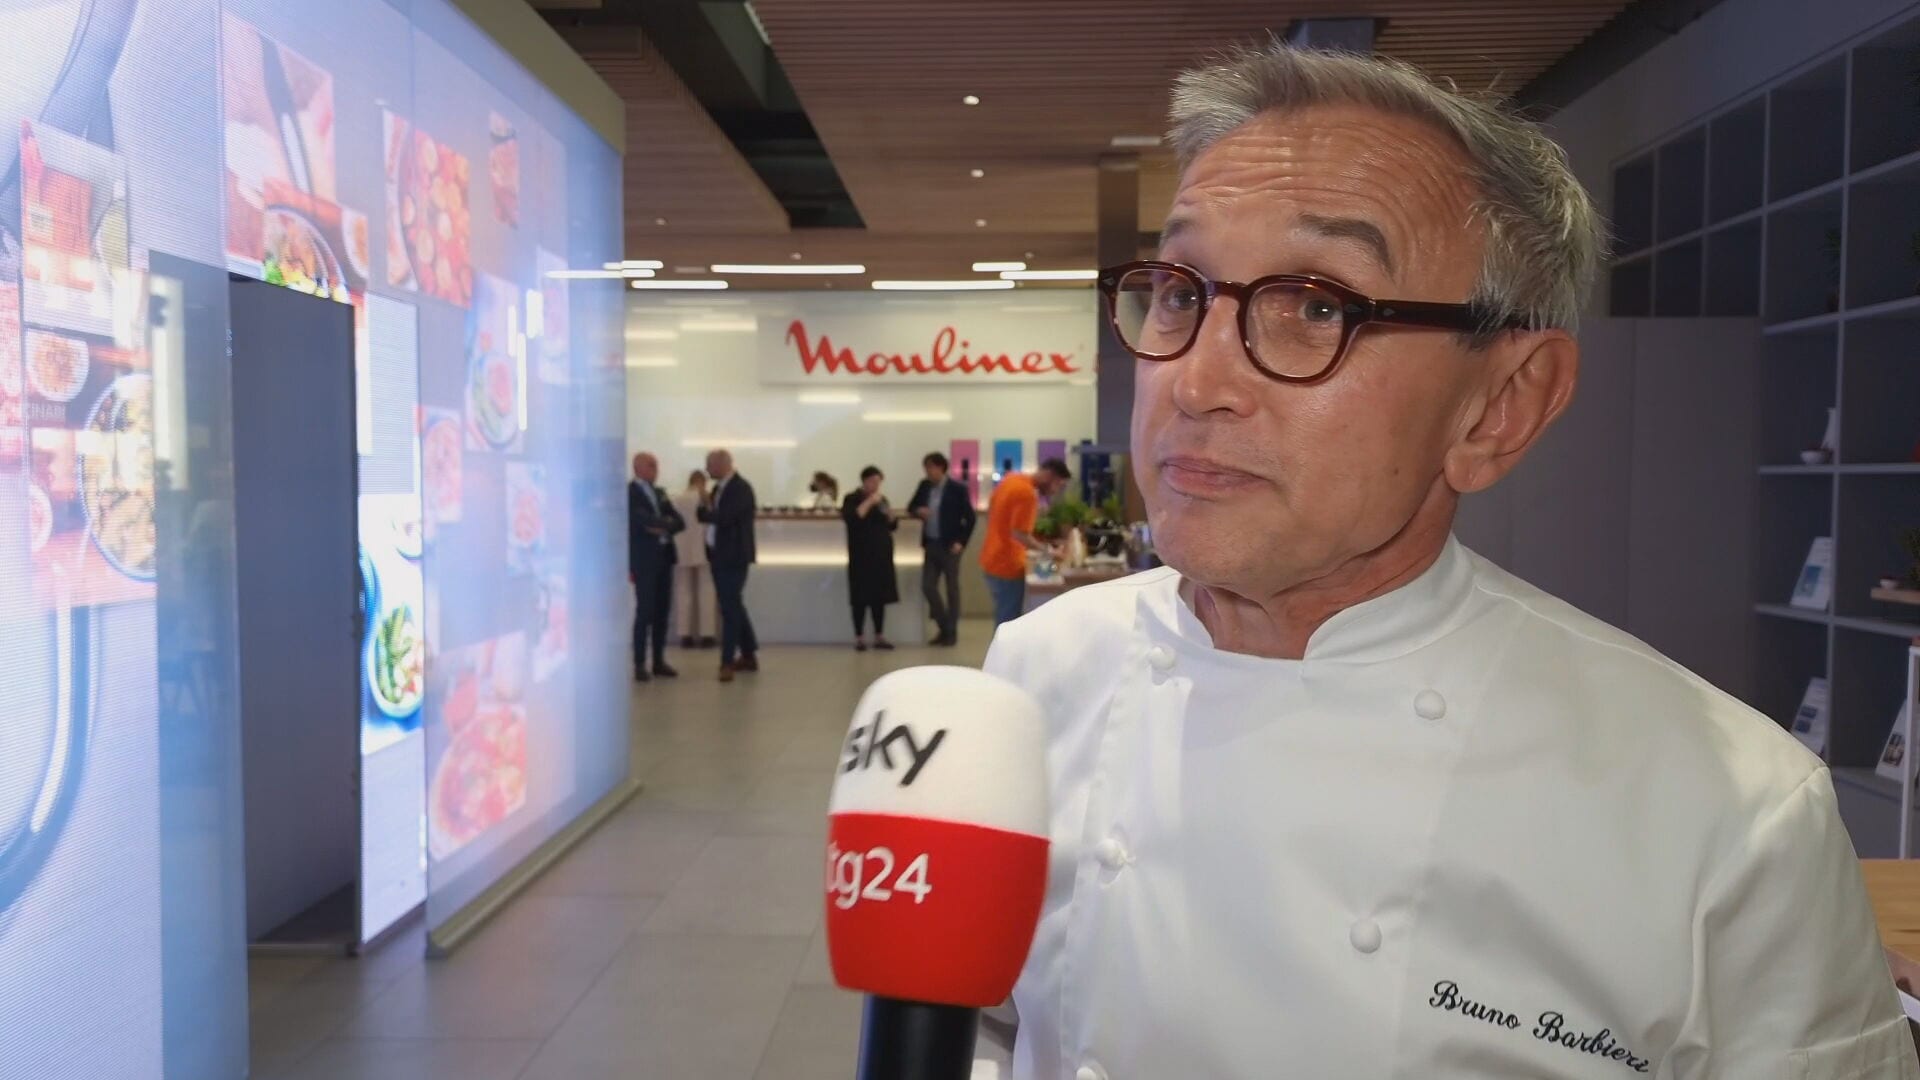 Chef Bruno Barbieri (7 stelle Michelin)